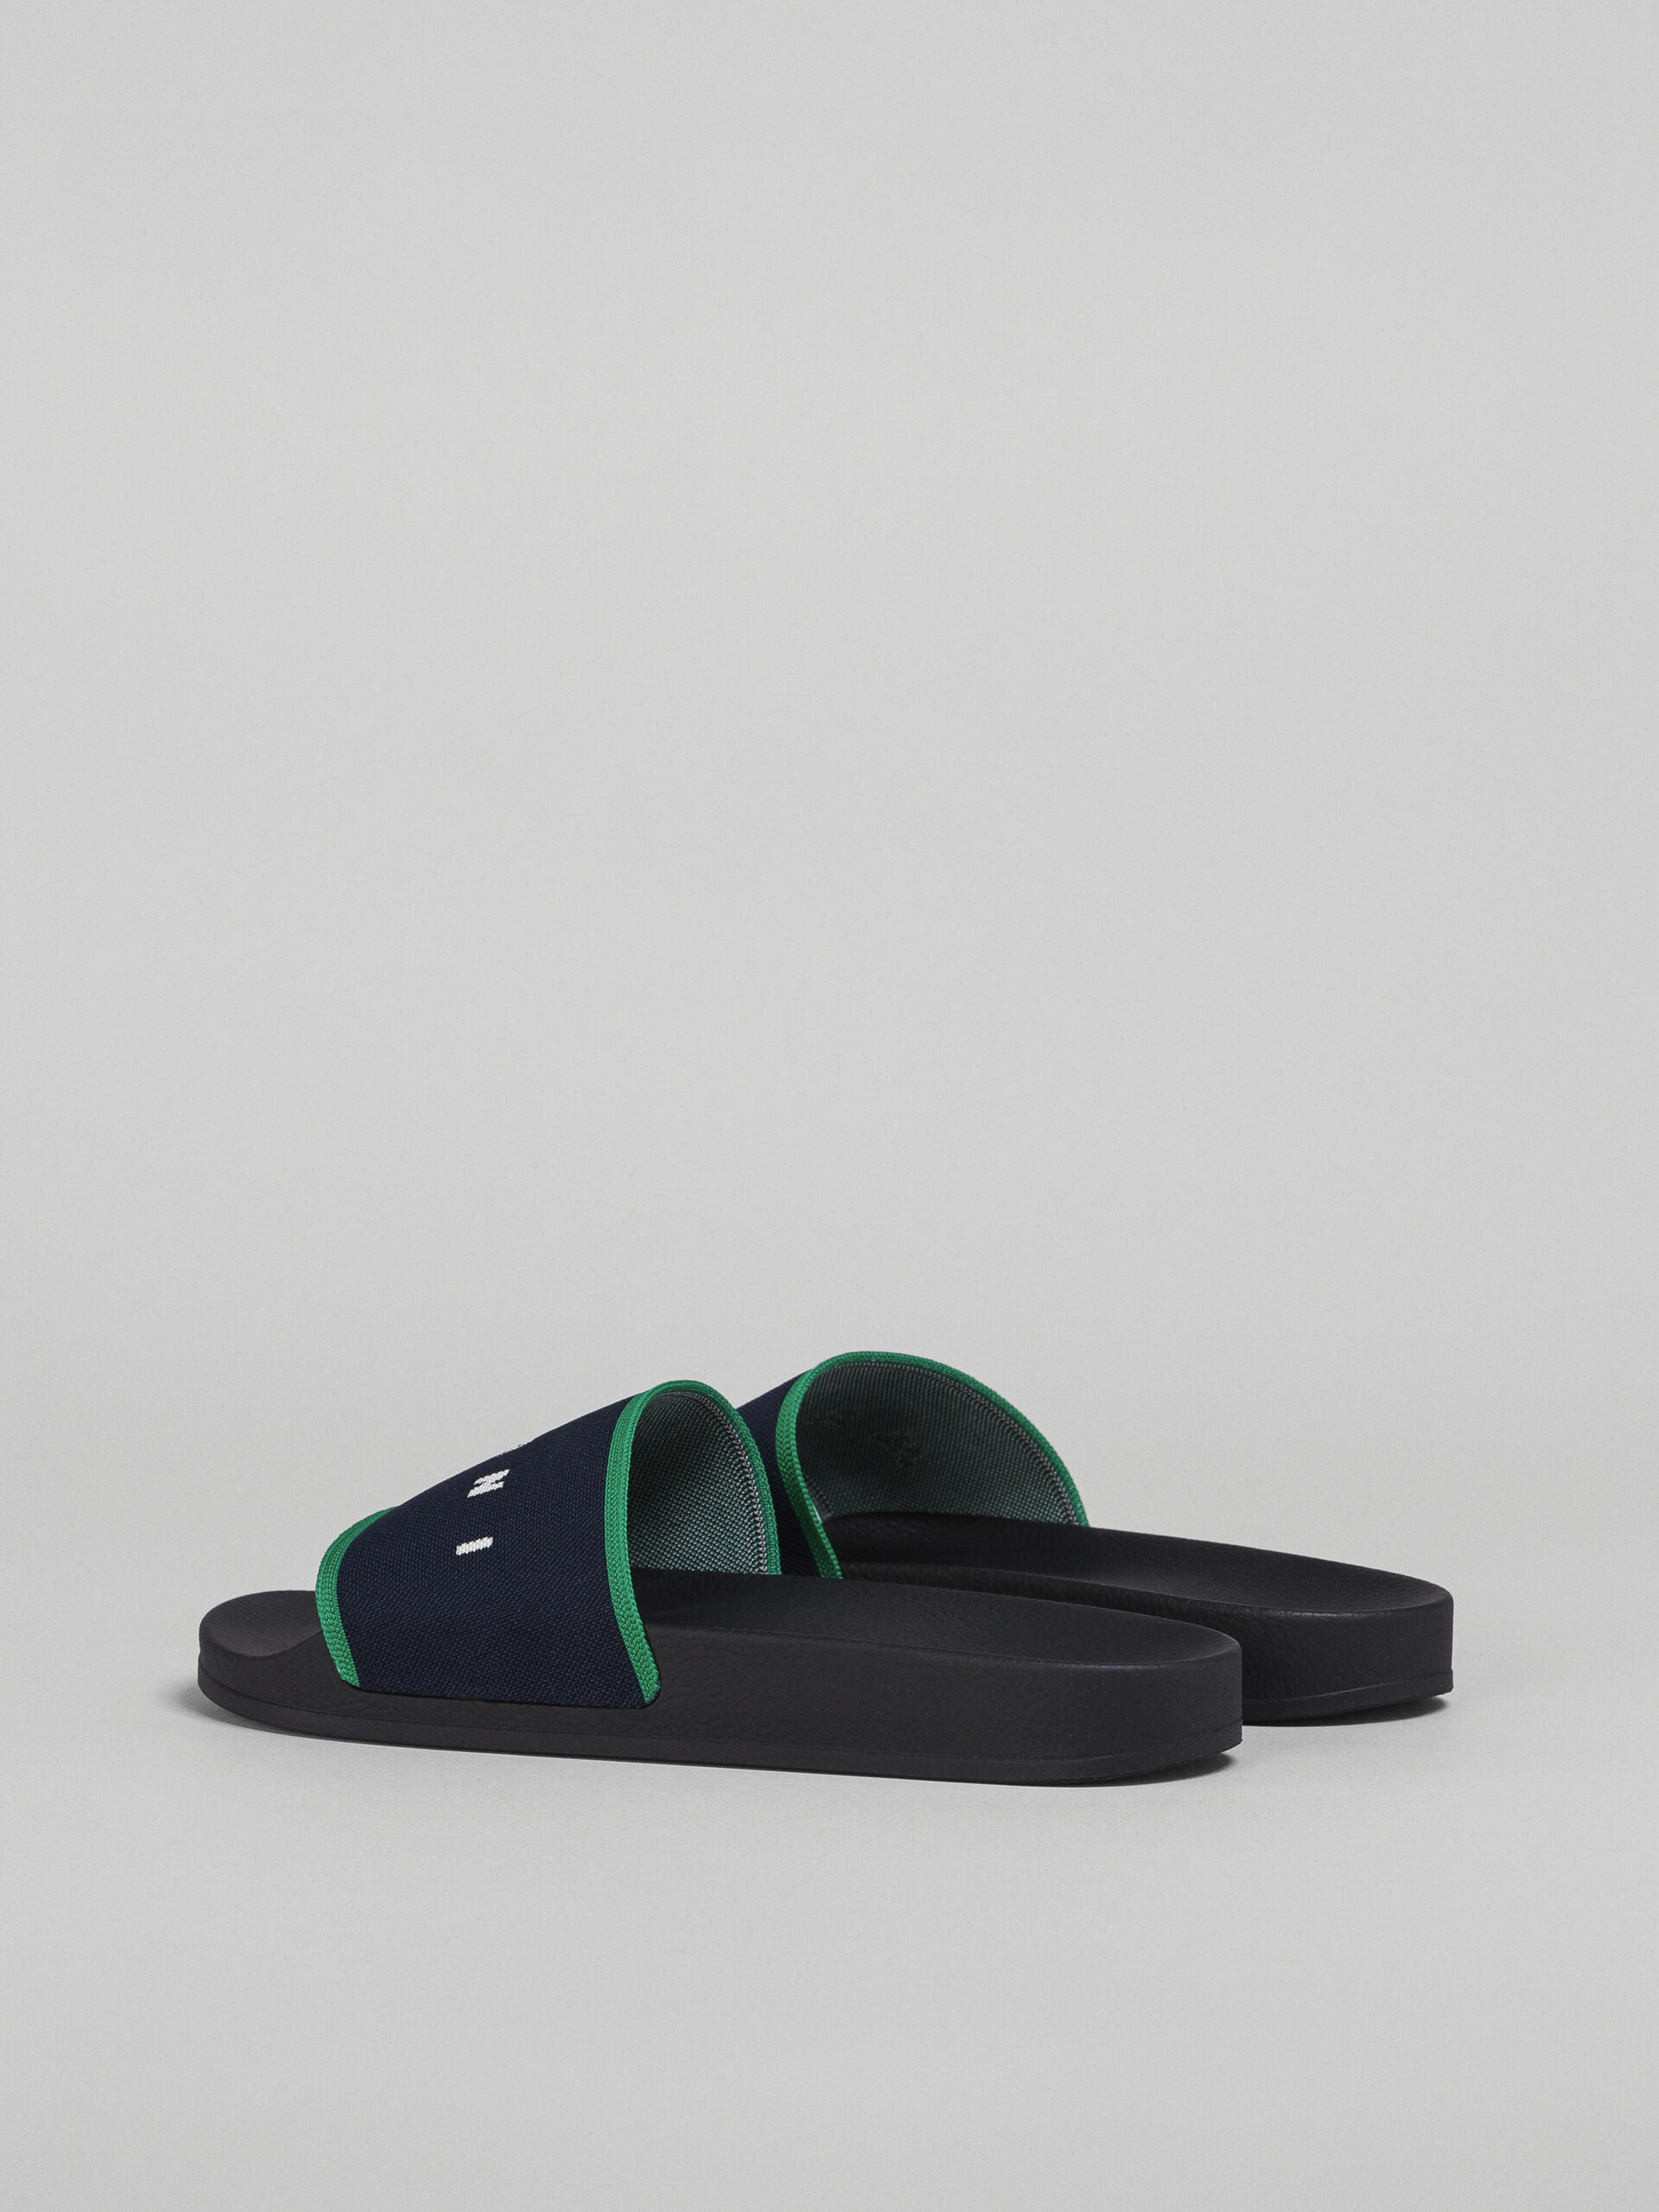 Blue black logo jacquard rubber slide - Sandals - Image 3